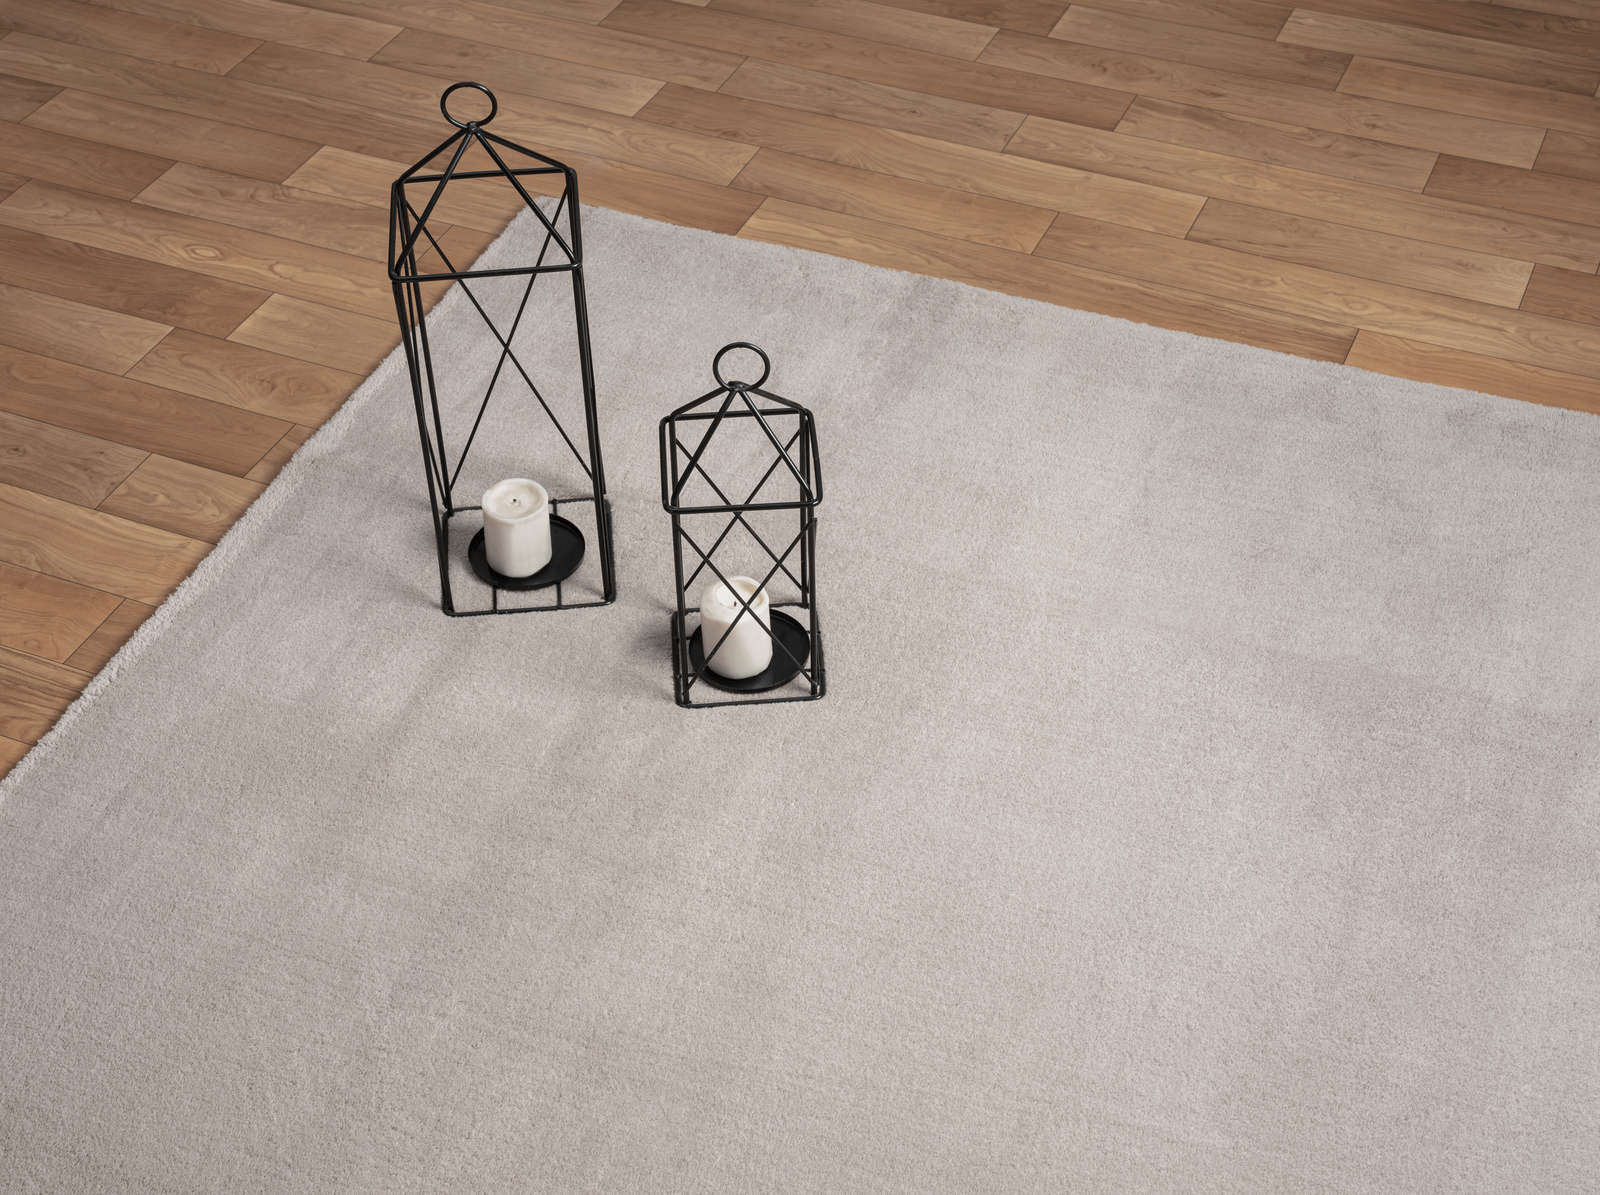             Modischer Runder Hochflor Teppich in Sand – Ø 120 cm
        